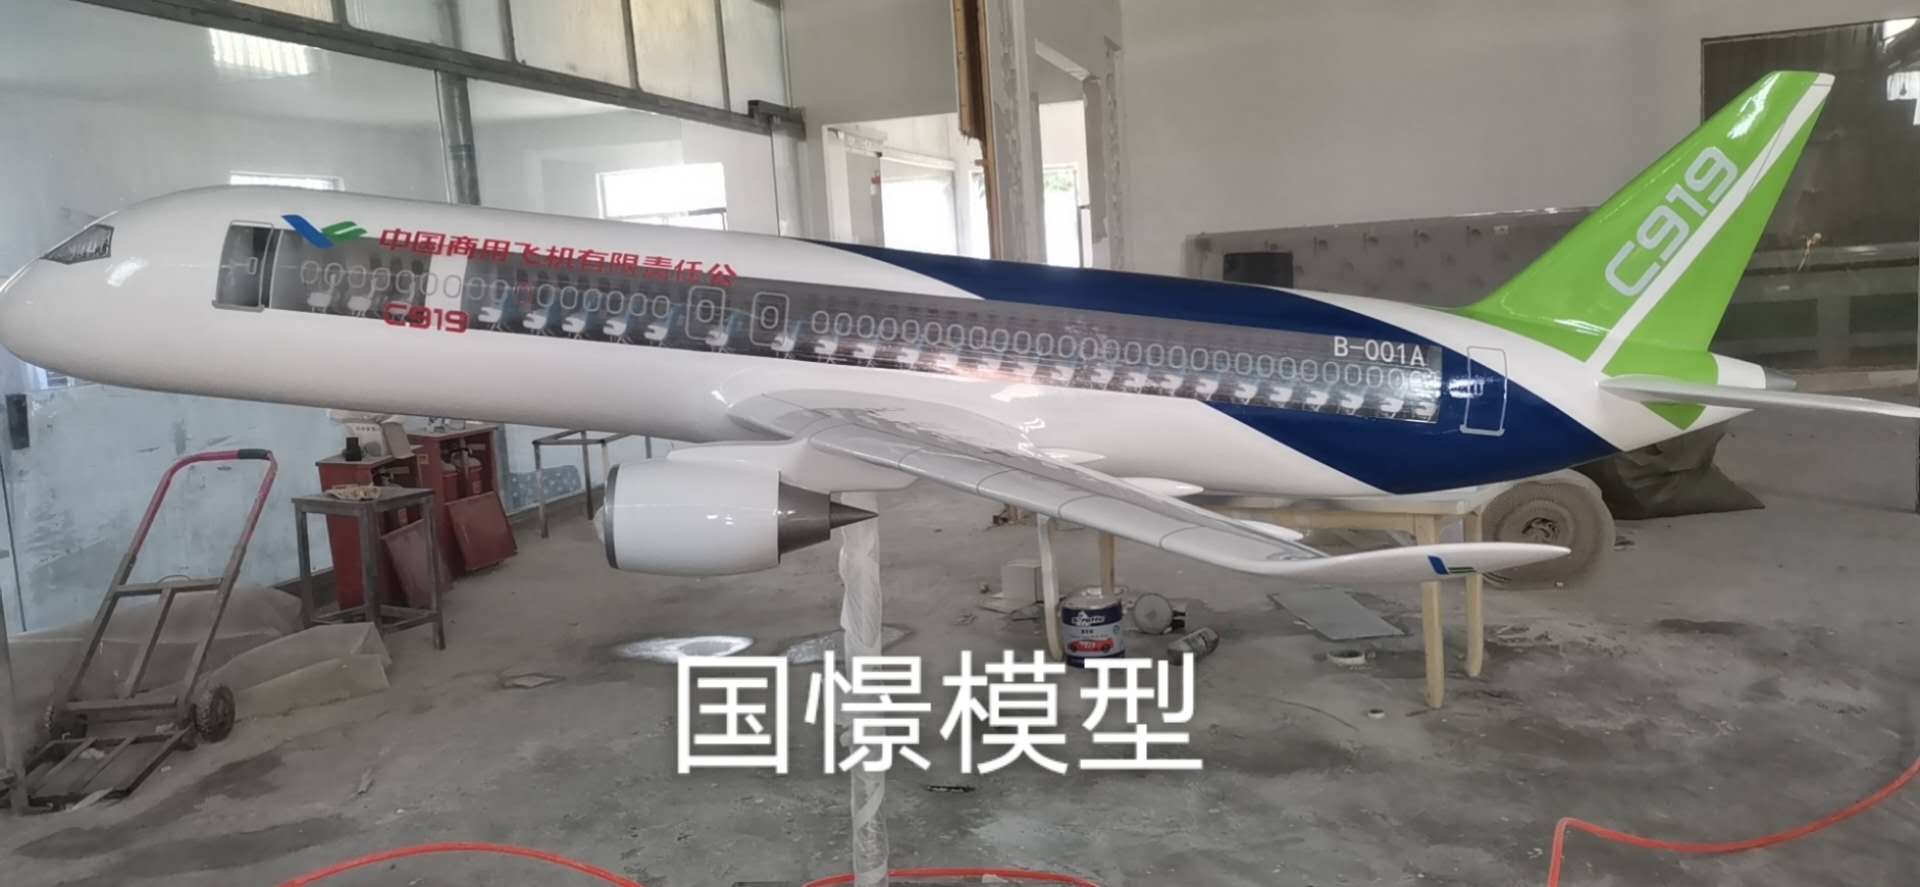 峡江县飞机模型